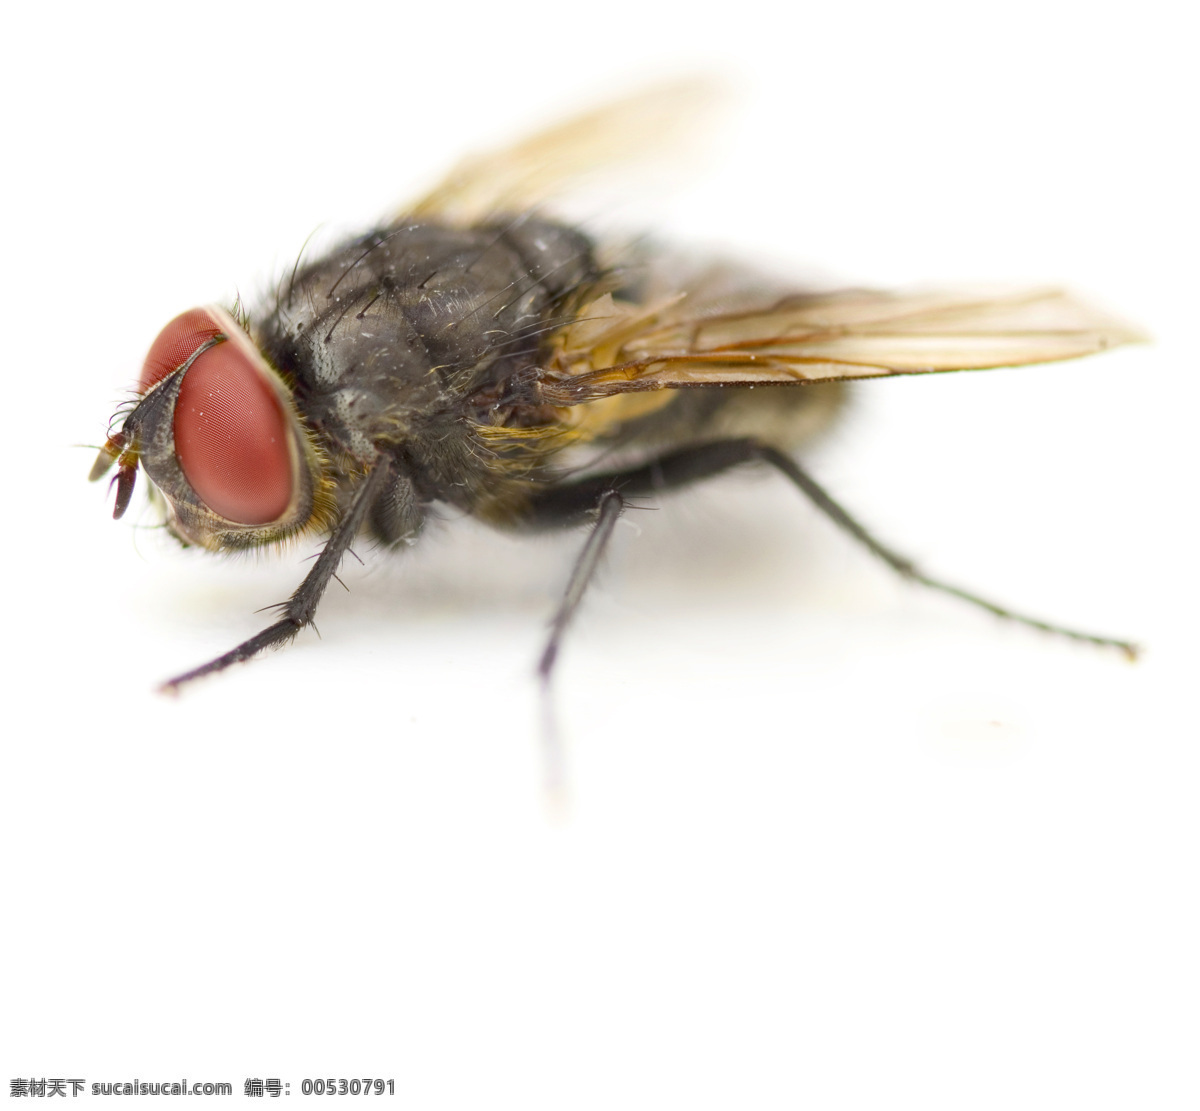 苍蝇 特写 昆虫 生物世界 微距 苍蝇特写 害虫 触角